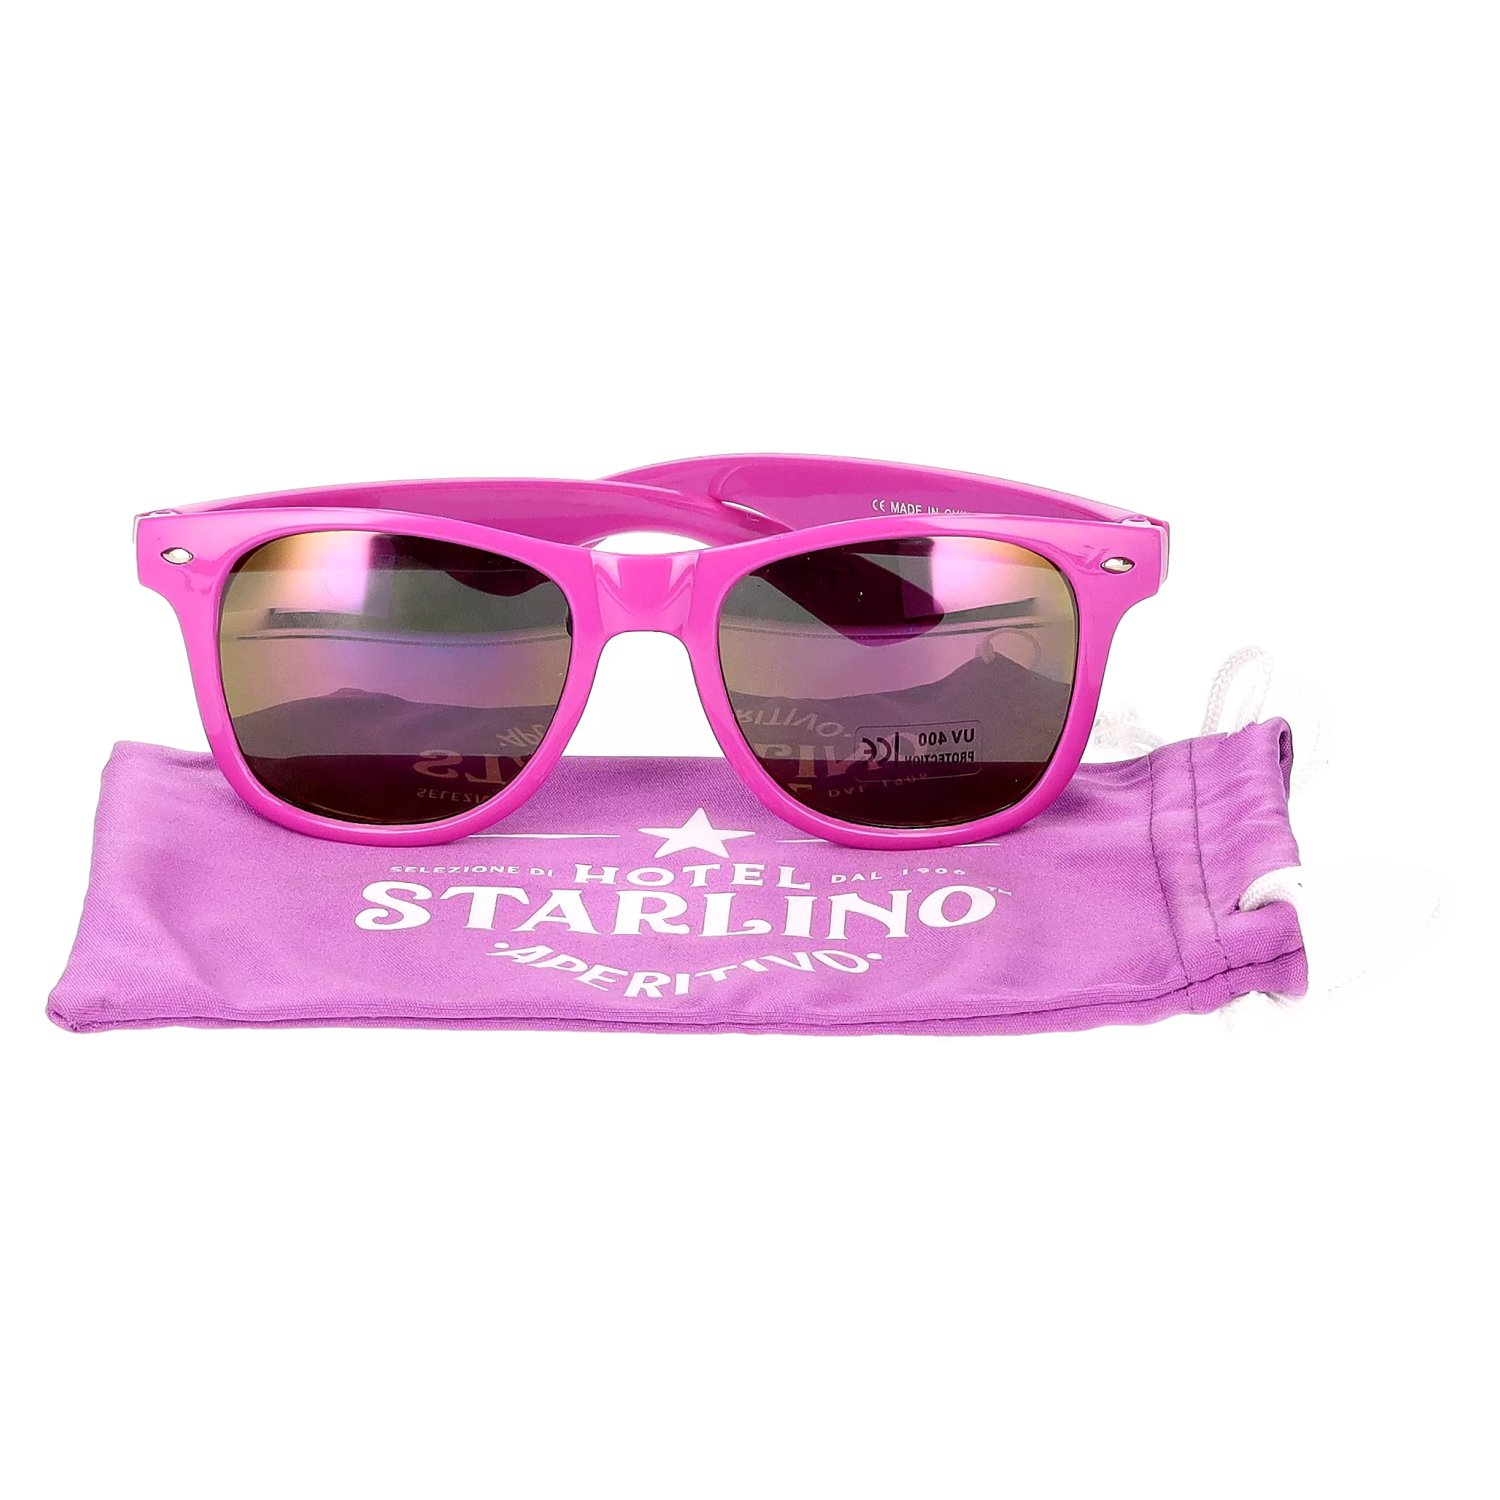 Violett - Starlino delicando Sonnenbrille